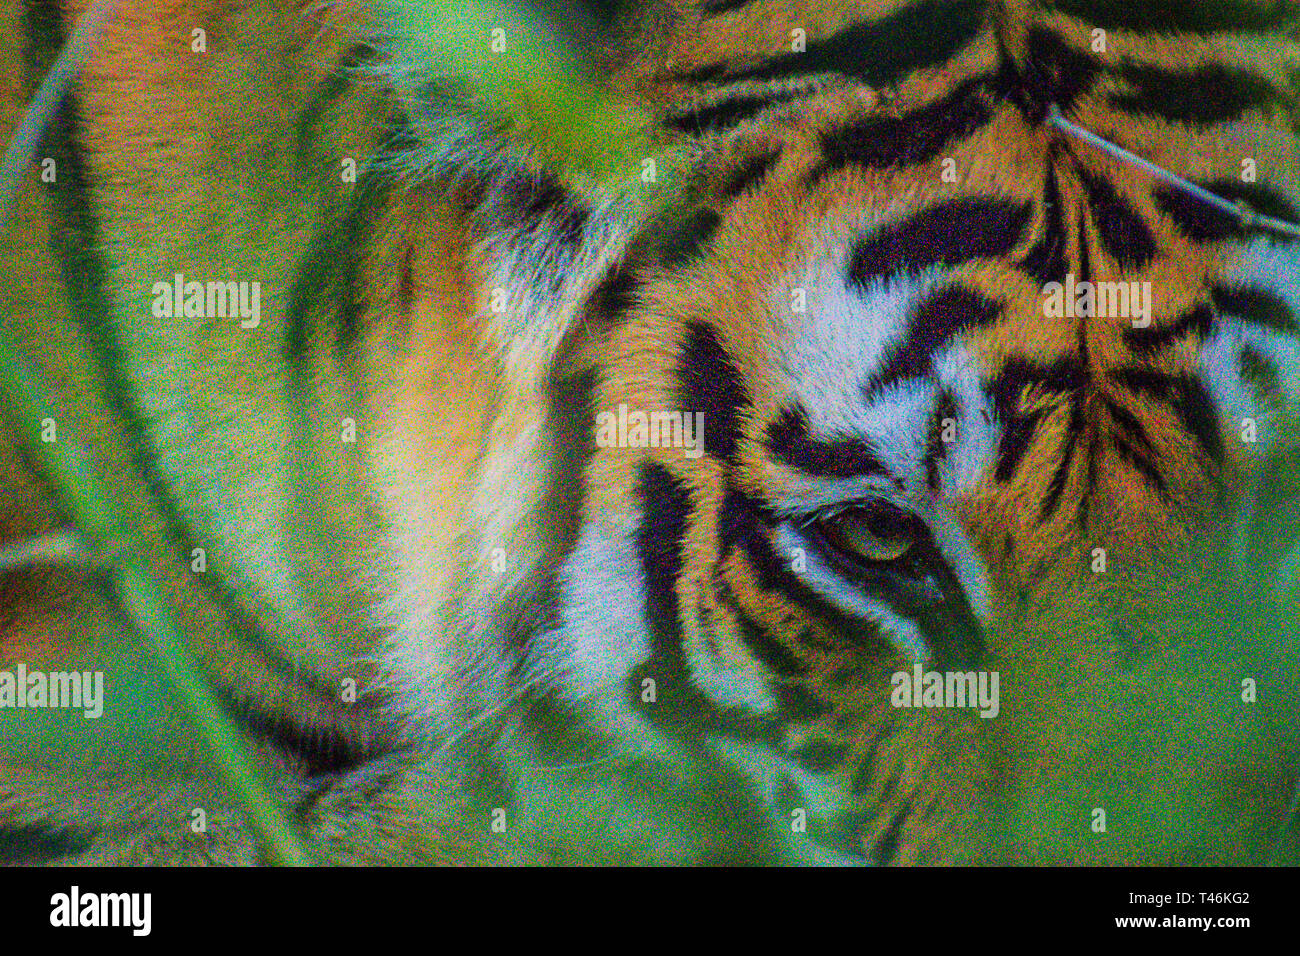 Tigre del Bengala Panthera tigris tigris in appoggio sotto agli alberi Bandhavgarh Foto Stock